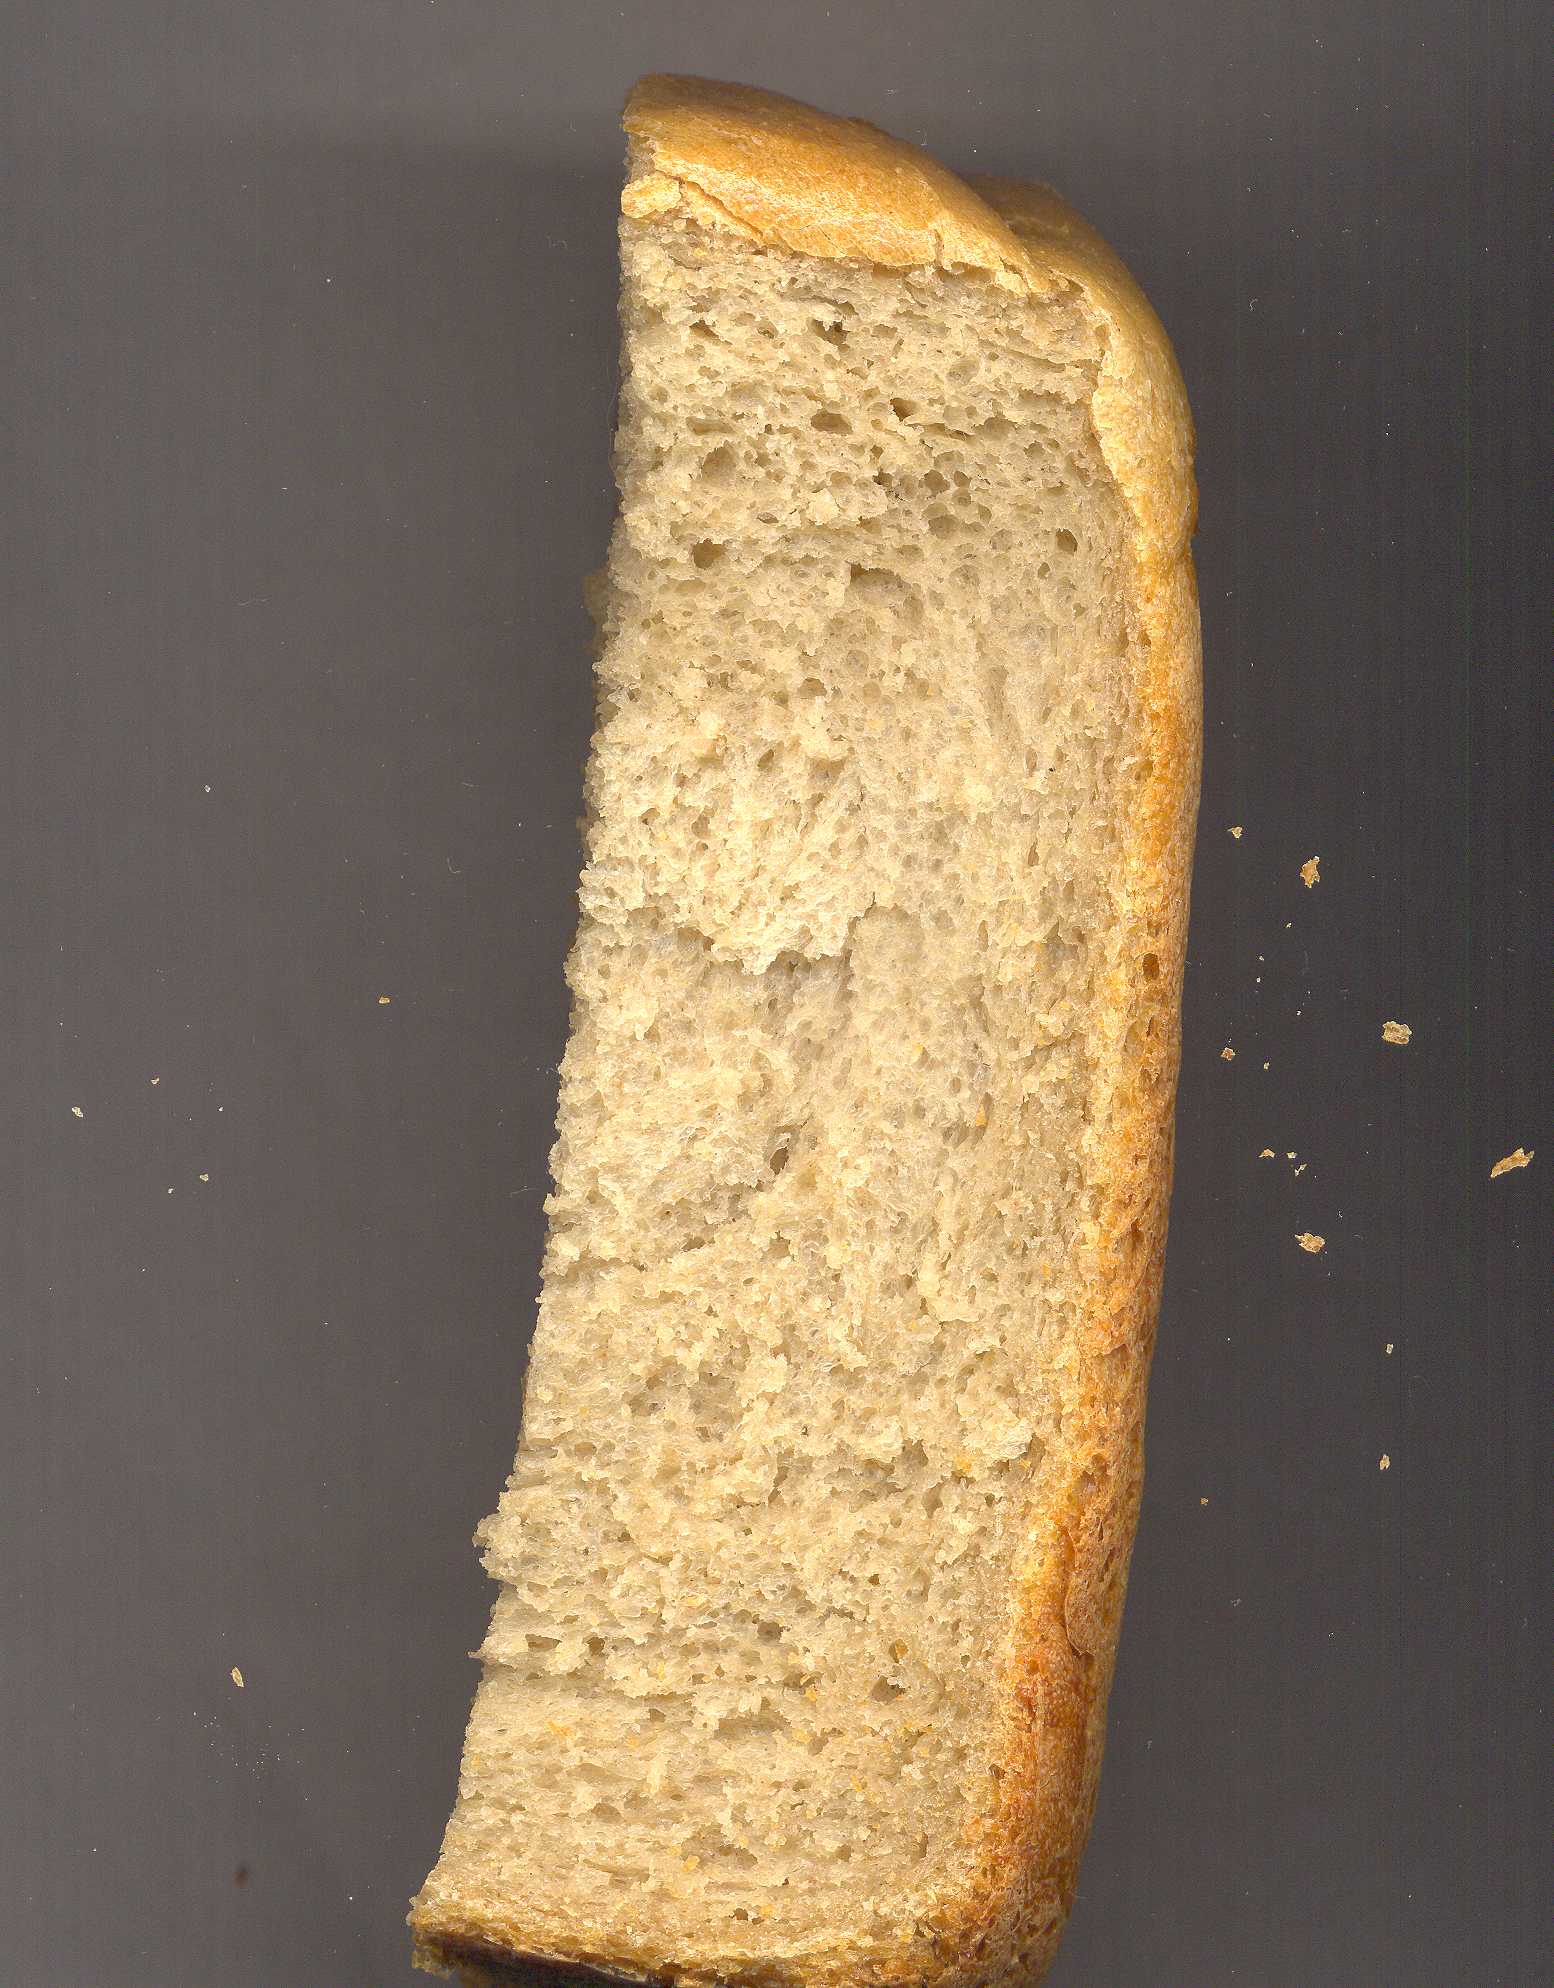 LG HB-1051. Wheat-oat-buckwheat bread